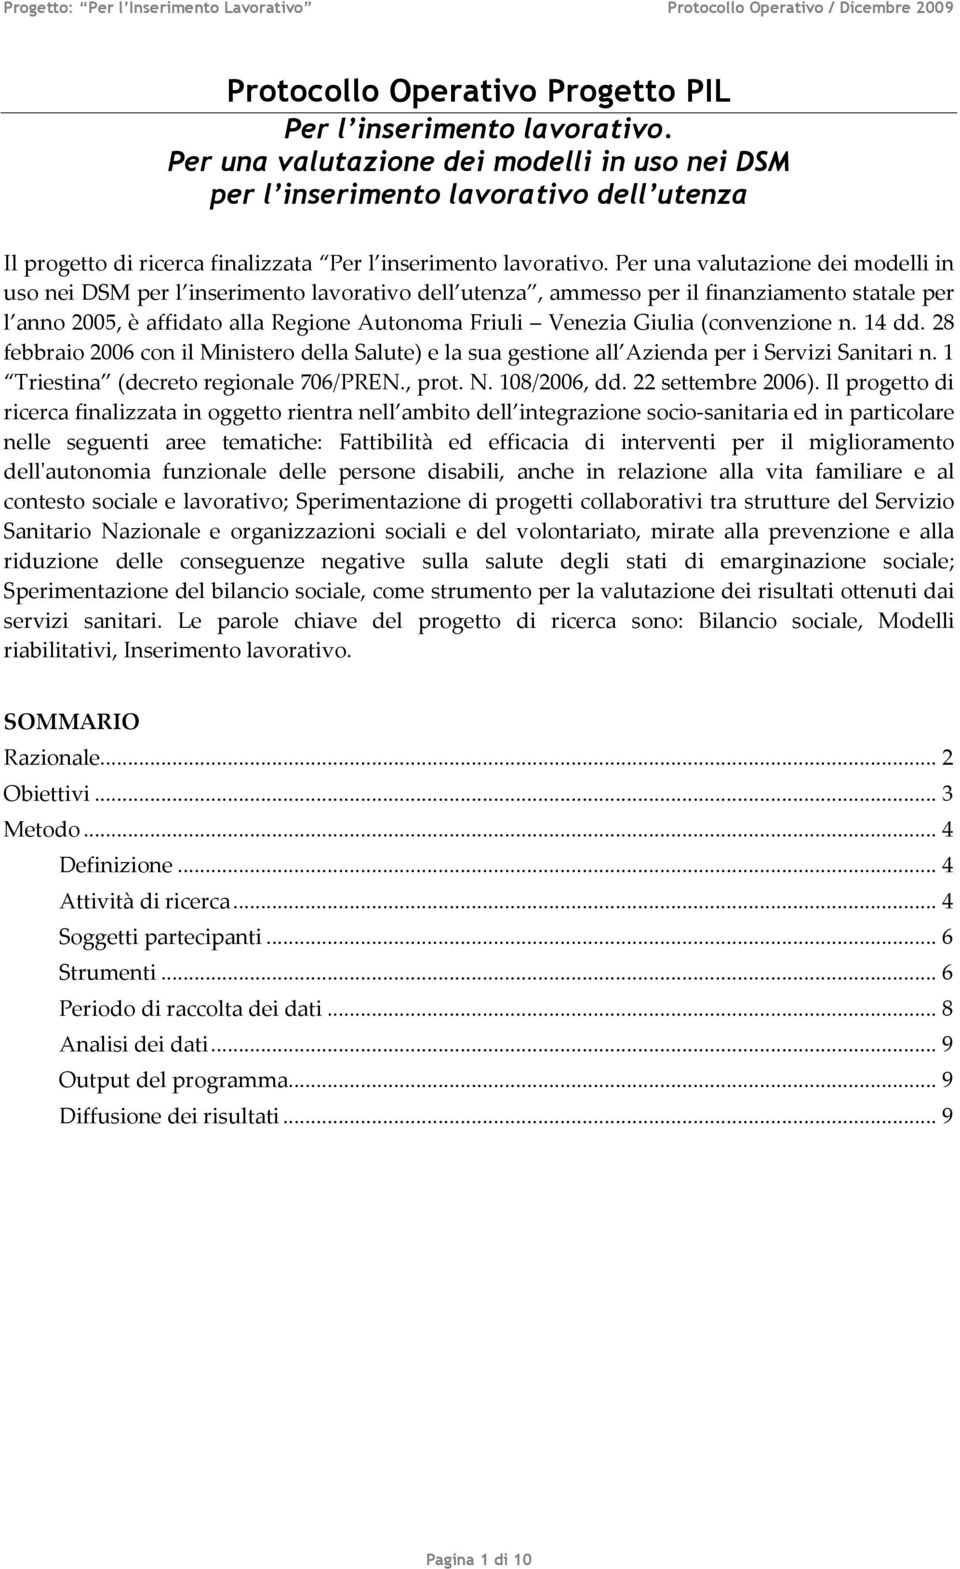 Per una valutazione dei modelli in uso nei DSM per l inserimento lavorativo dell utenza, ammesso per il finanziamento statale per l anno 2005, è affidato alla Regione Autonoma Friuli Venezia Giulia